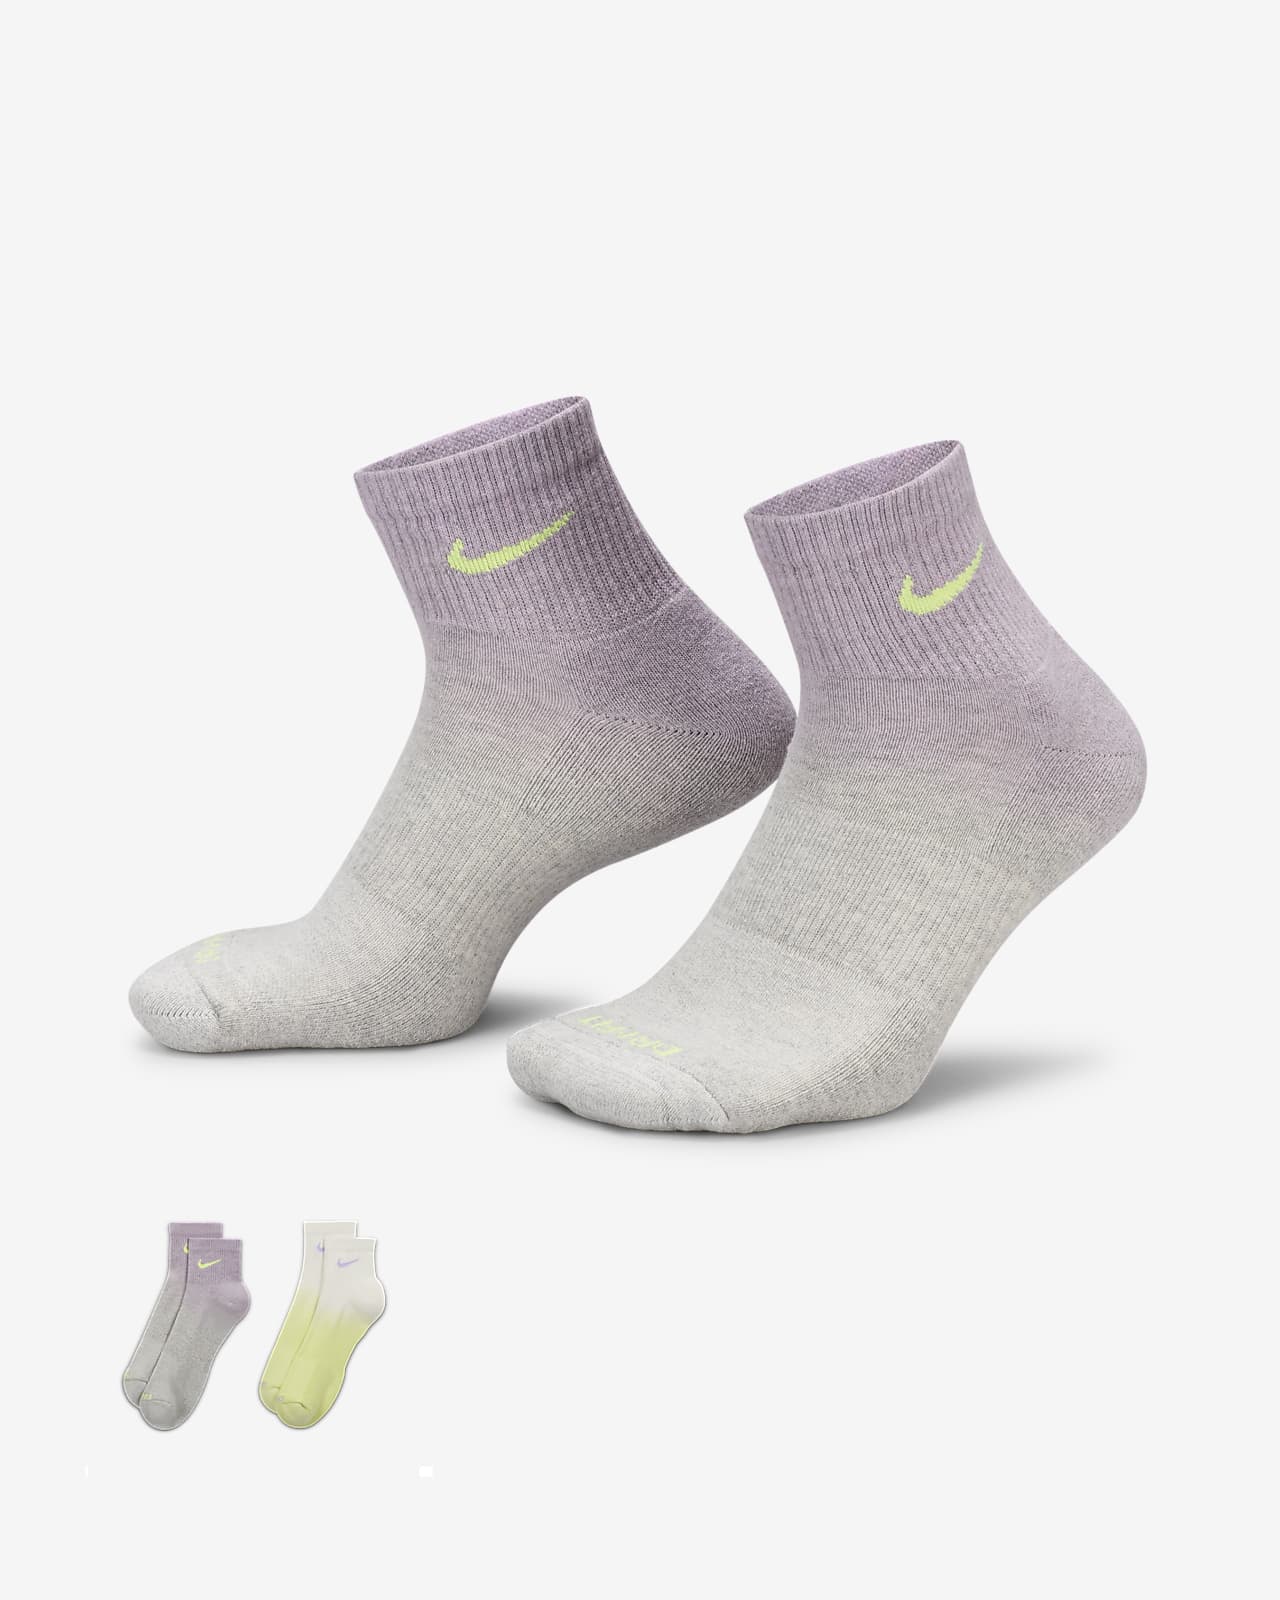 Meias pelo tornozelo com amortecimento Nike Everyday Plus (2 pares)